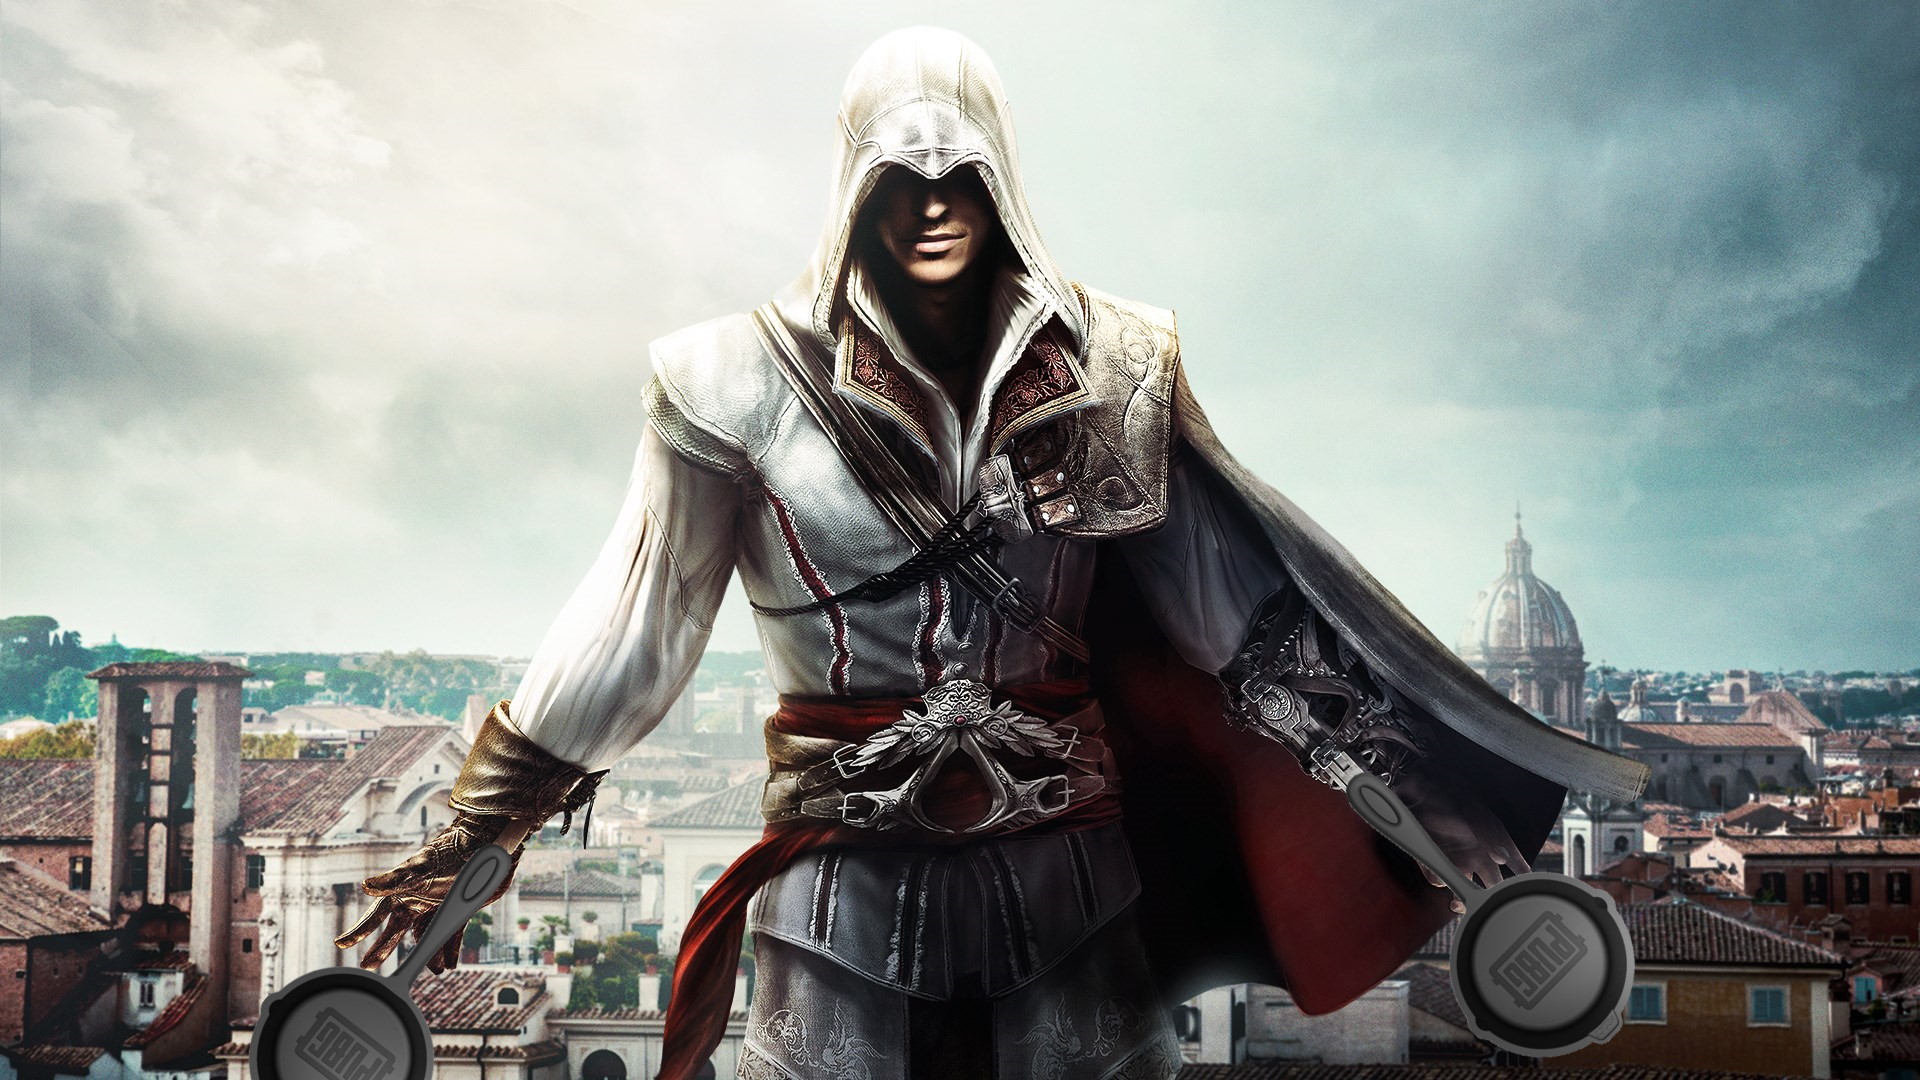 Assassin's Creed meets PUBG